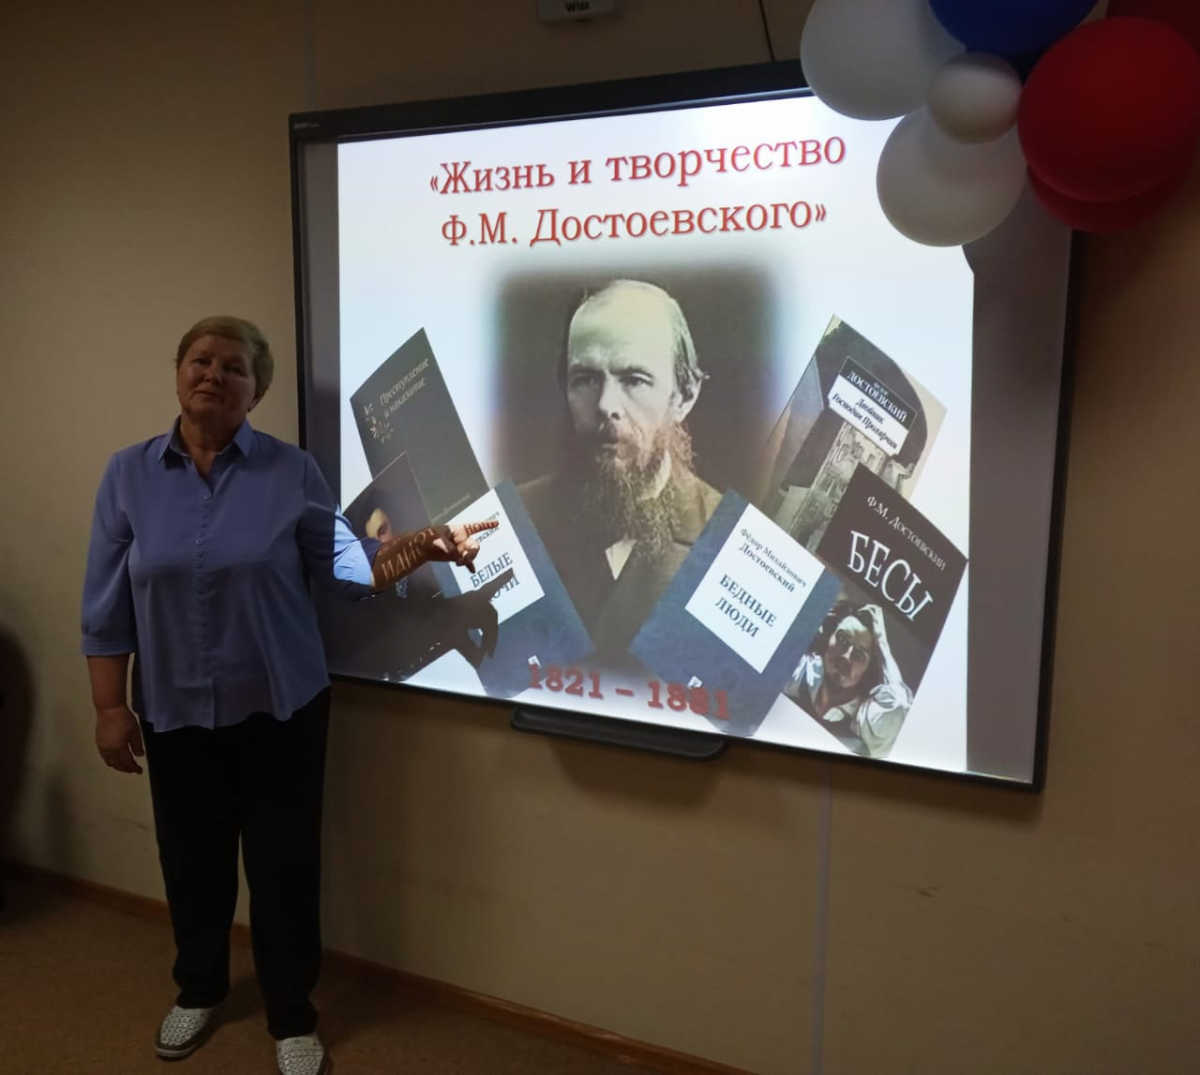 Ф.М. Достоевскому – 200 лет со дня рождения